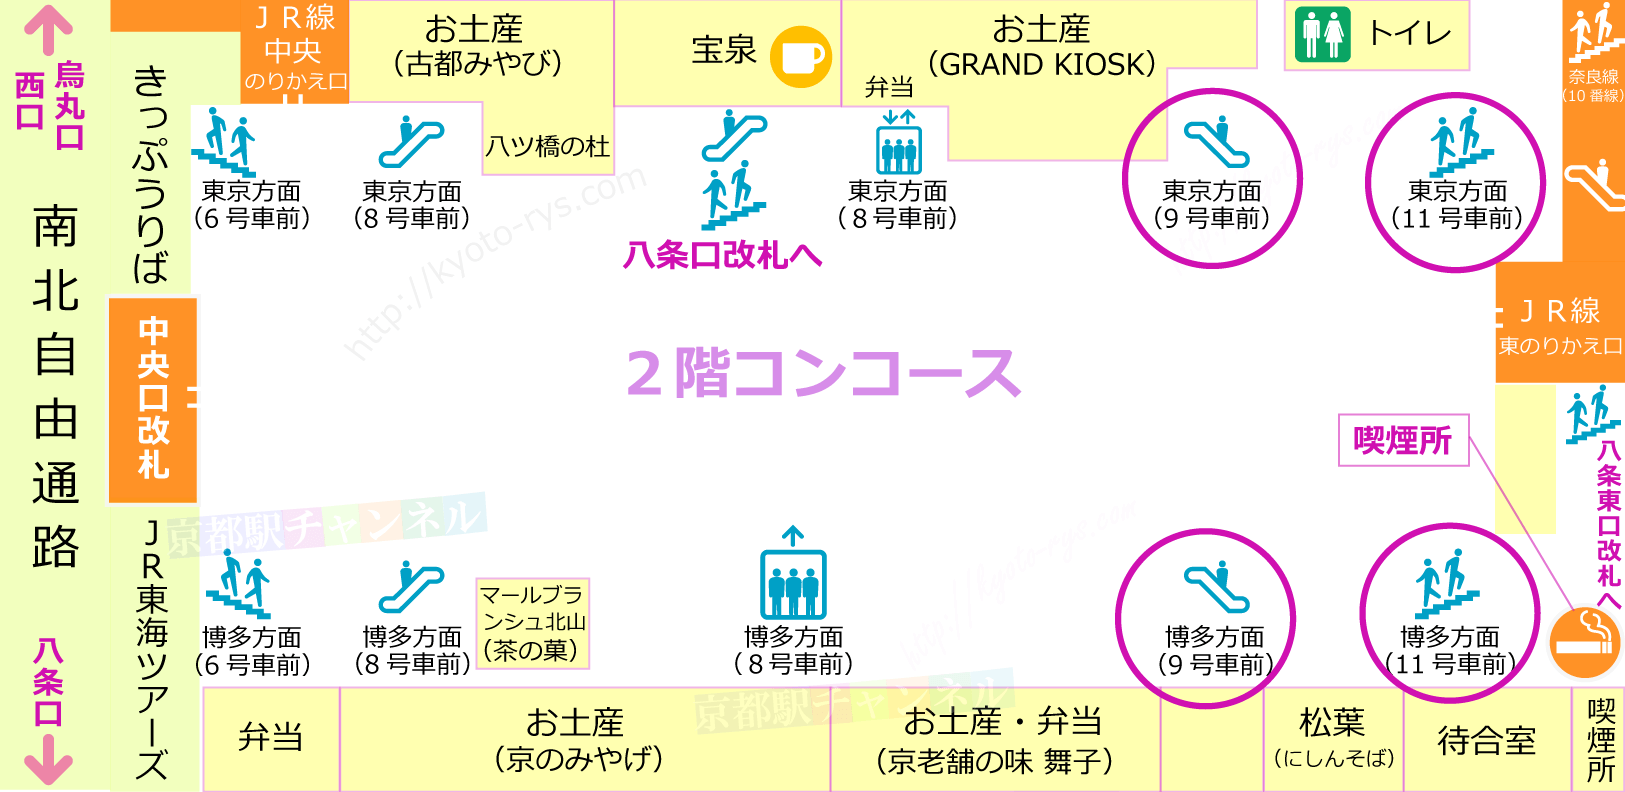 新幹線京都駅のコンコースと喫煙所の地図